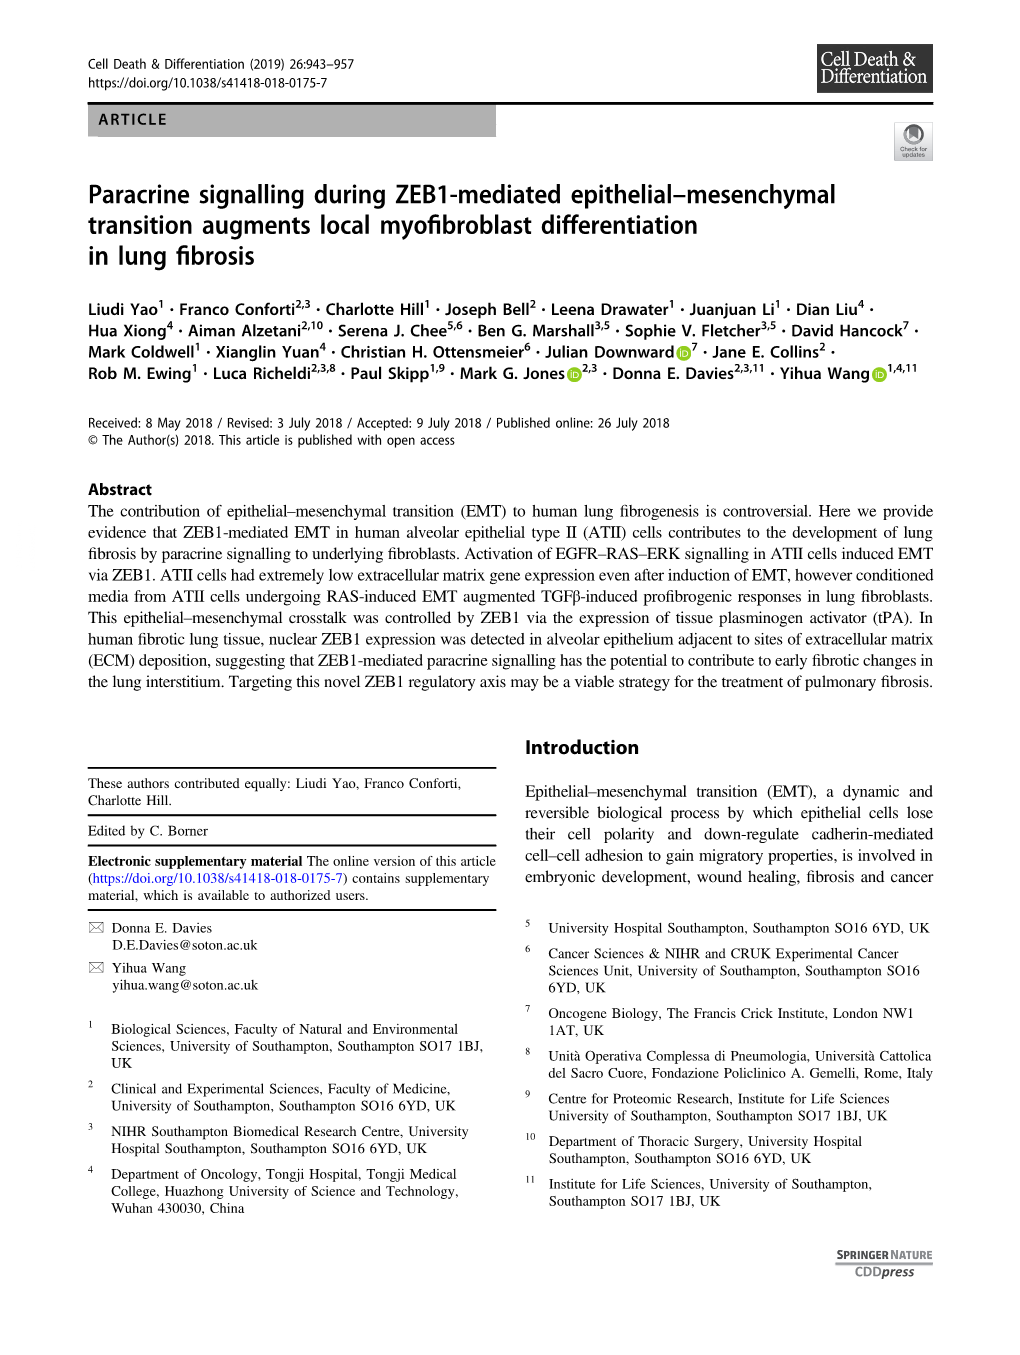 Paracrine Signalling During ZEB1-Mediated Epithelialâ